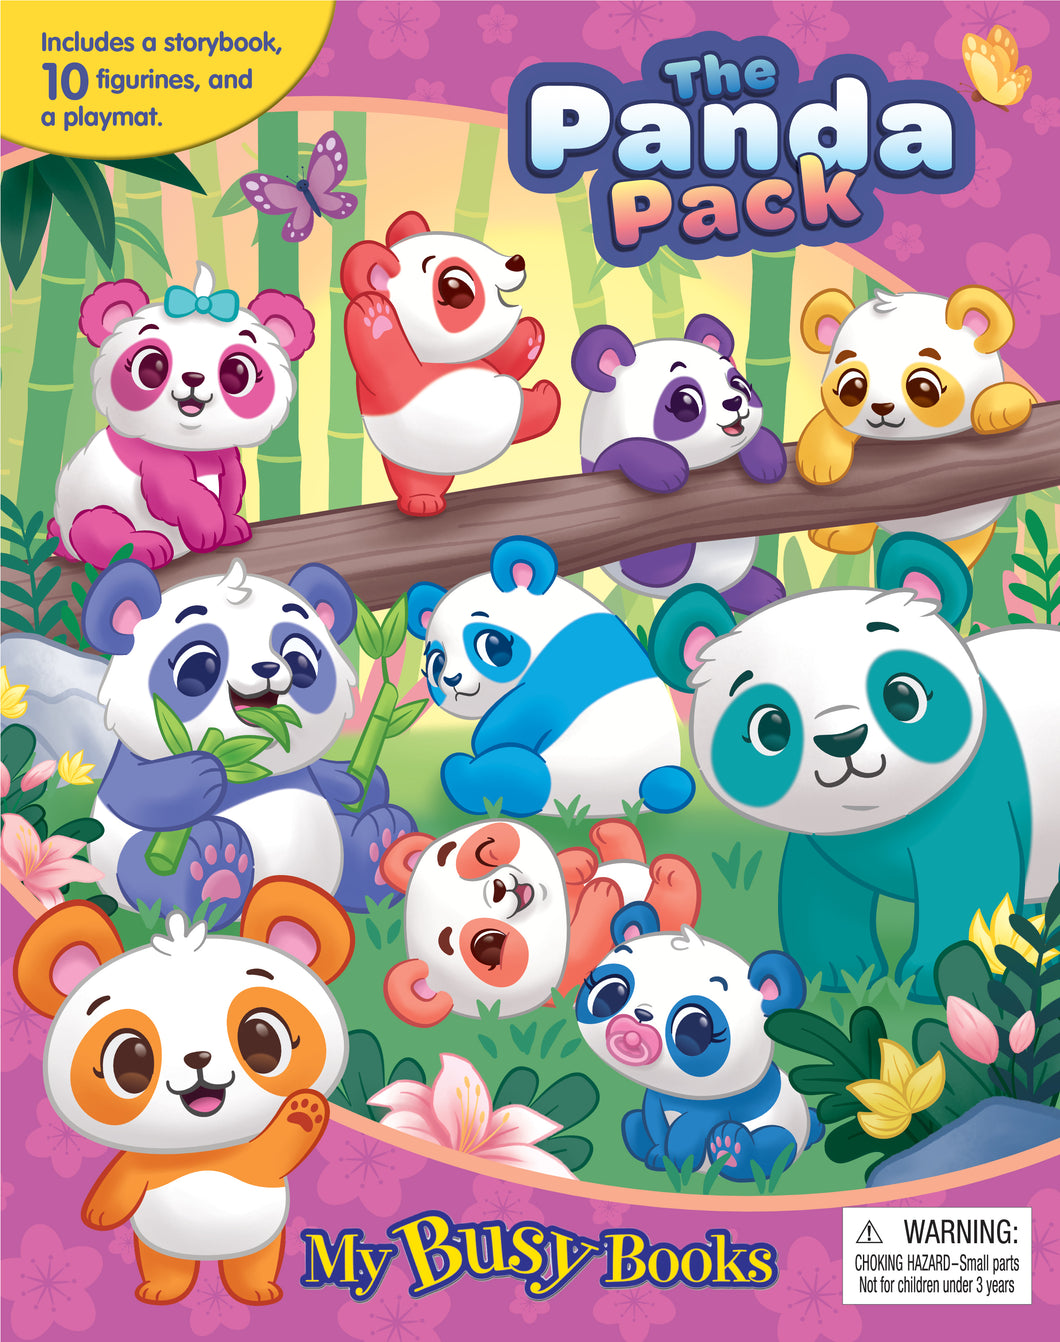 The Panda Pack